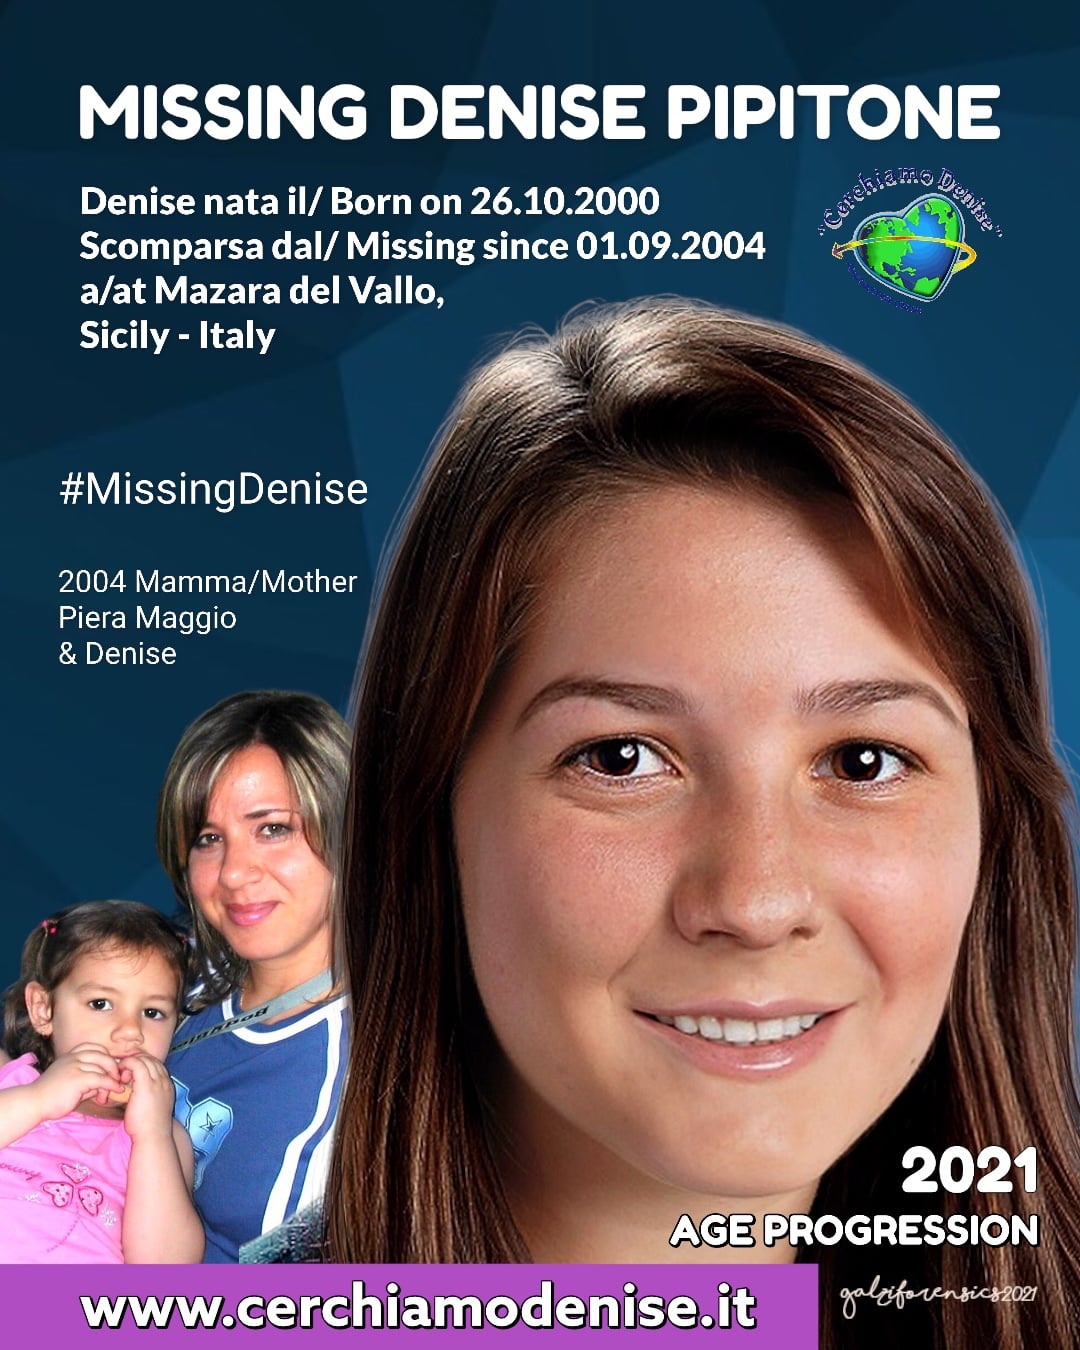 Denise Pipitone: pubblicata l’age progression del 2021